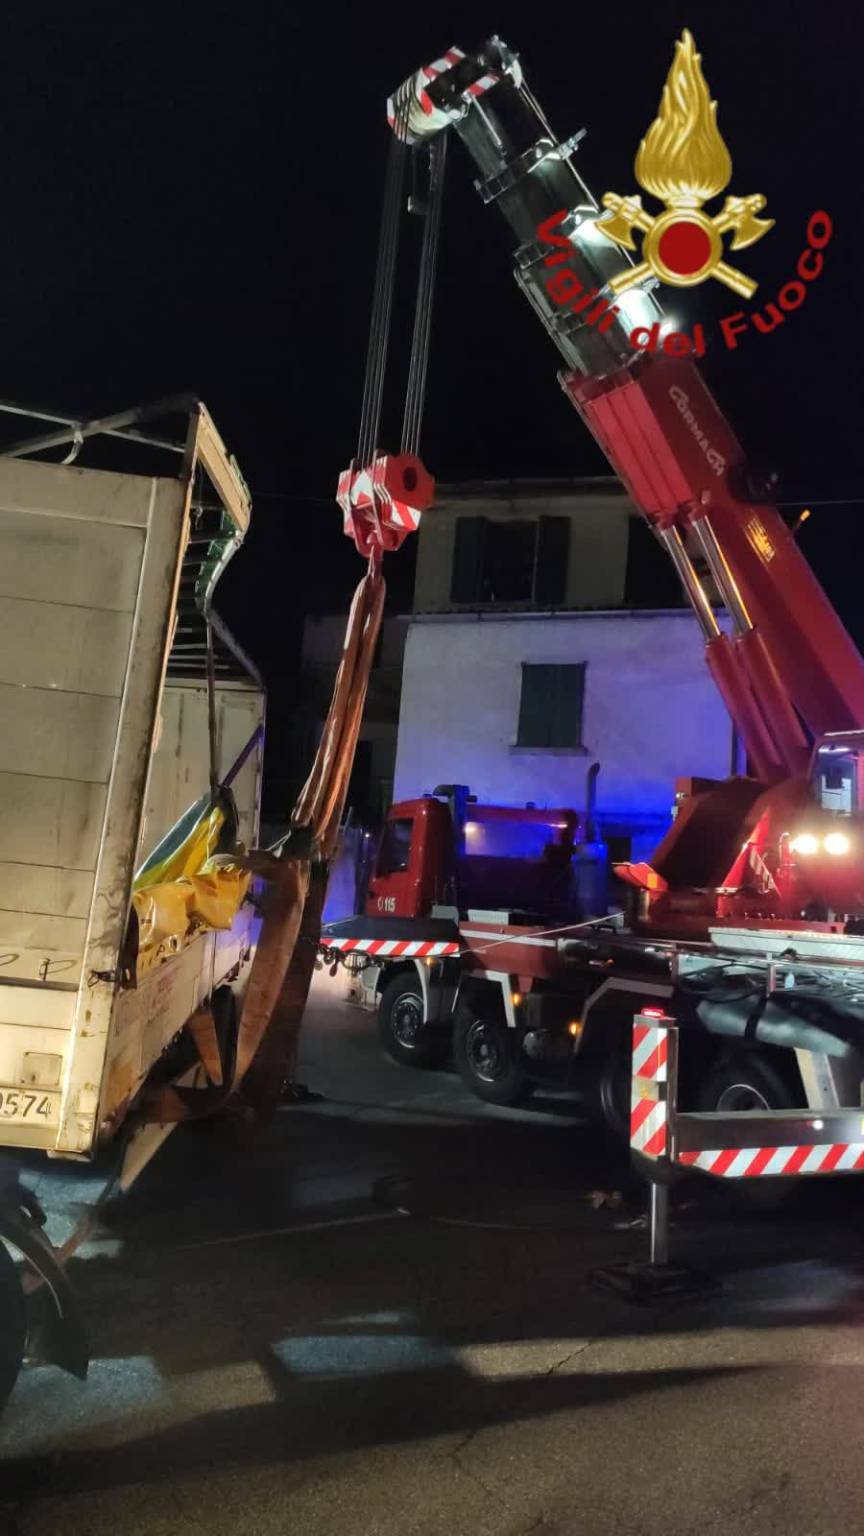 pompieri intervento notte plesio per rimettere in carreggiata camion ribaltato